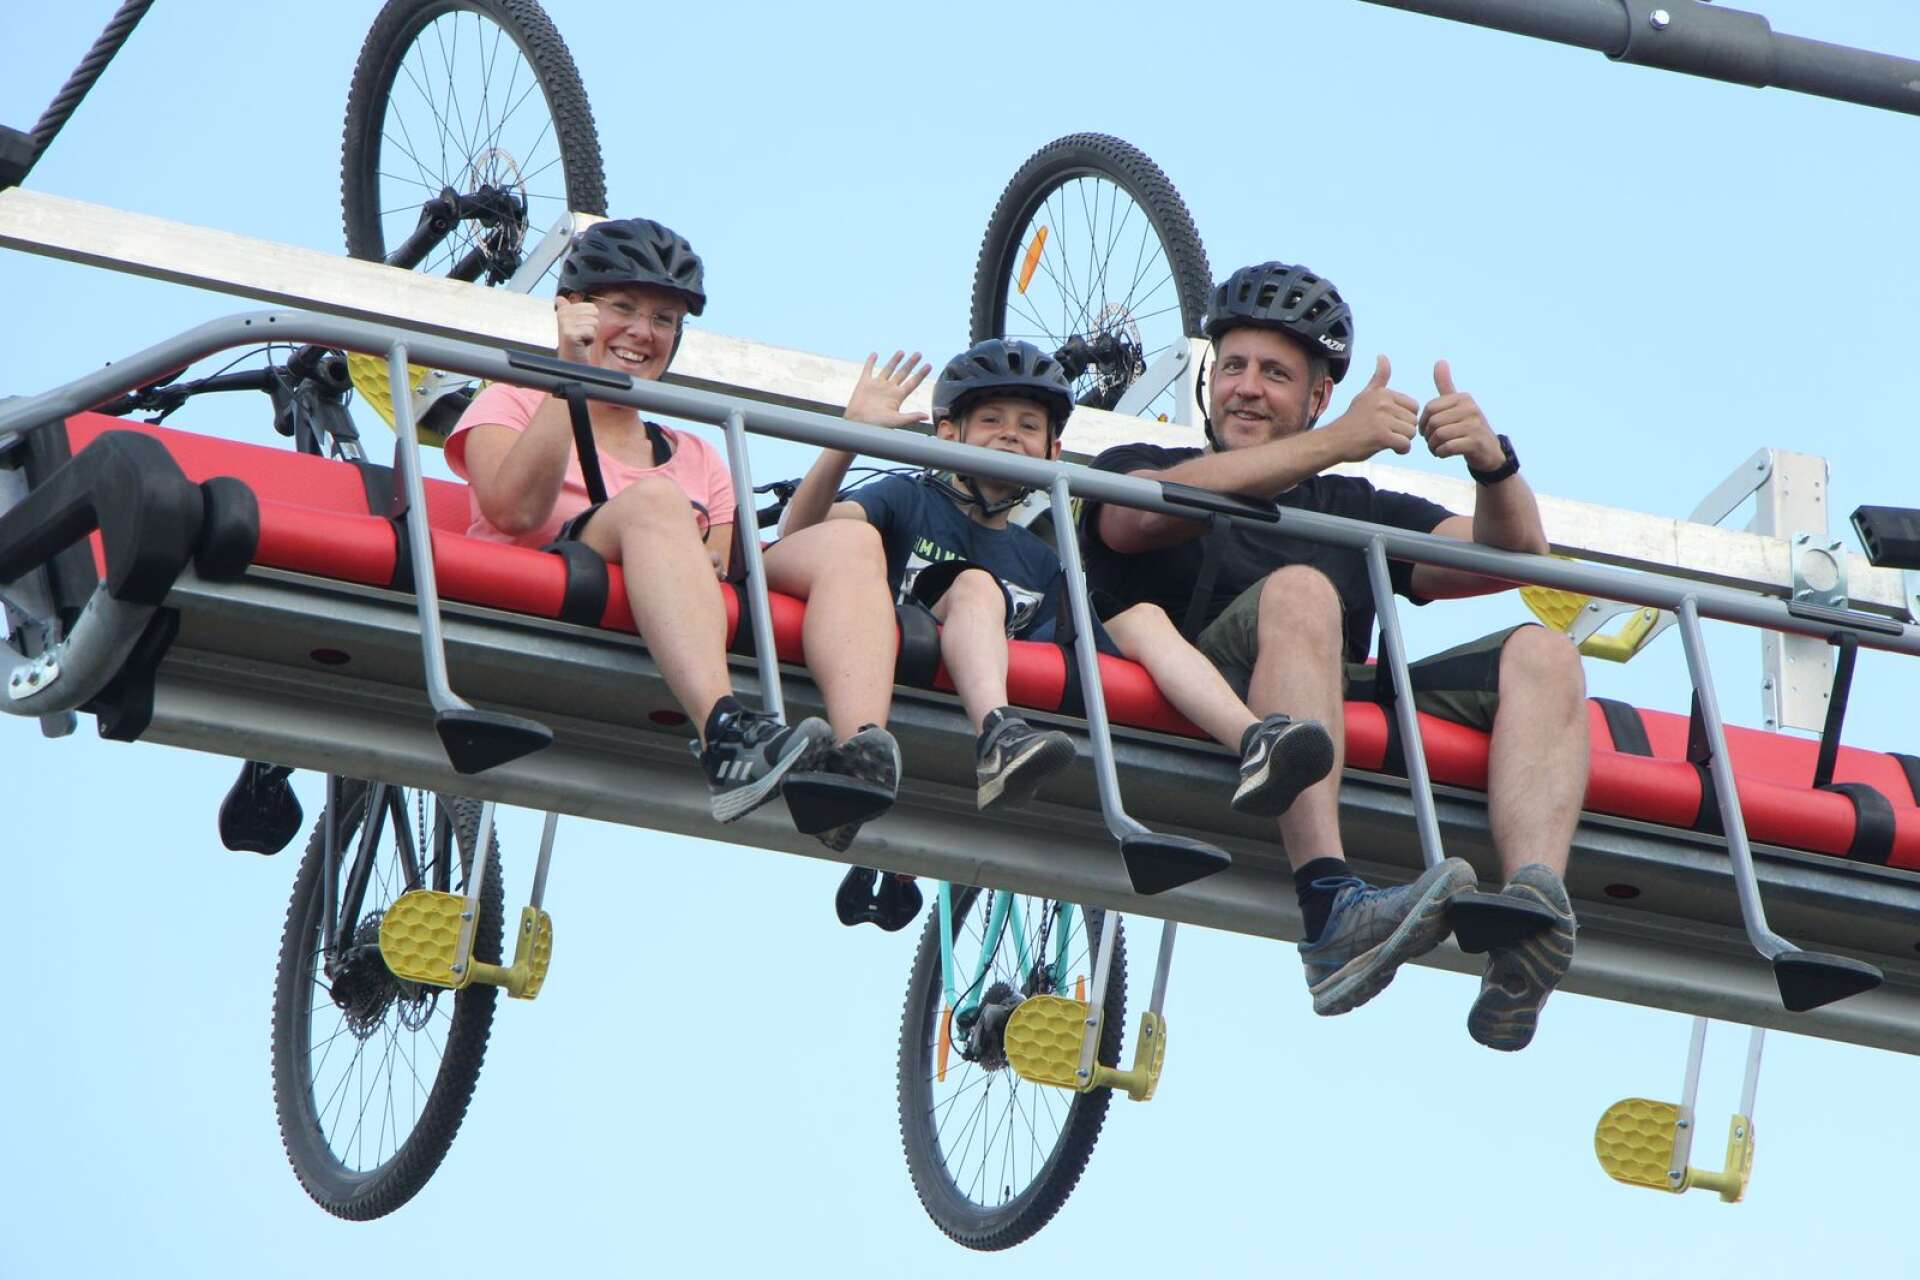 Cyklarna hänger bakpå och idel glada cyklister fångades av NWT:s kamera.